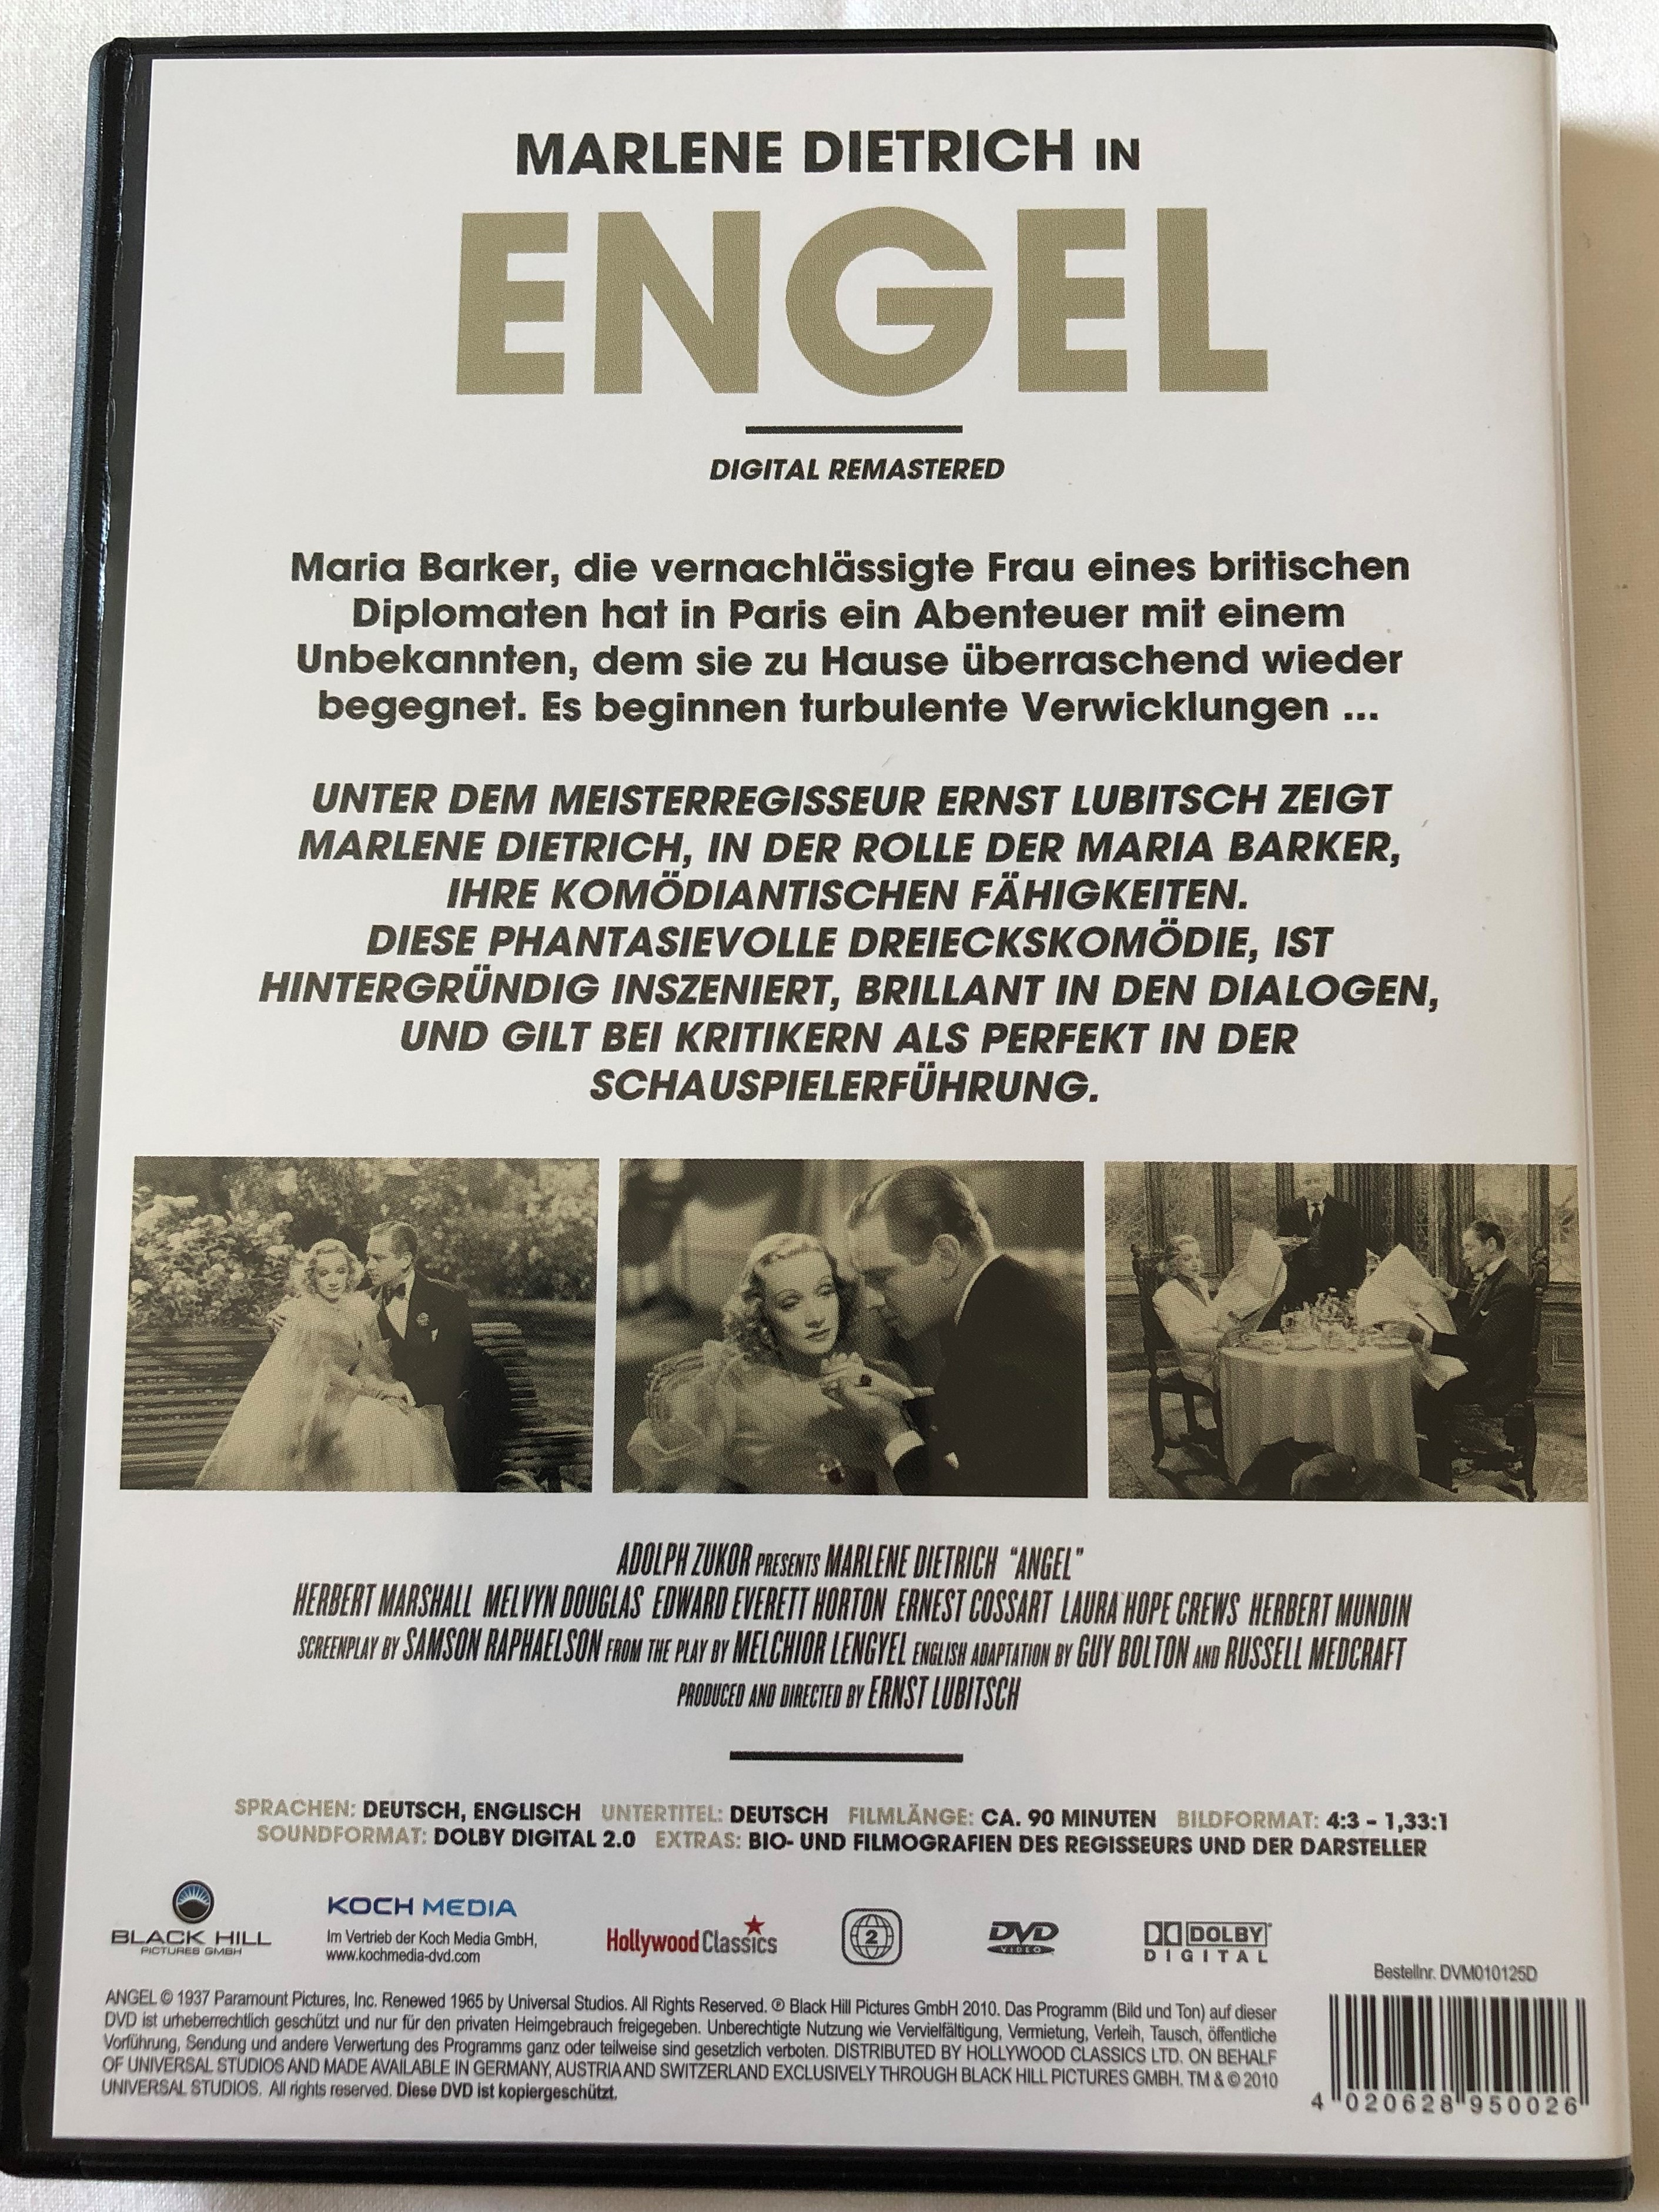 engel-dvd-1937-angel-directed-by-ernst-lubitsch-starring-marlene-dietrich-herbert-marshall-melvyn-douglas-diva-highlight-2-.jpg